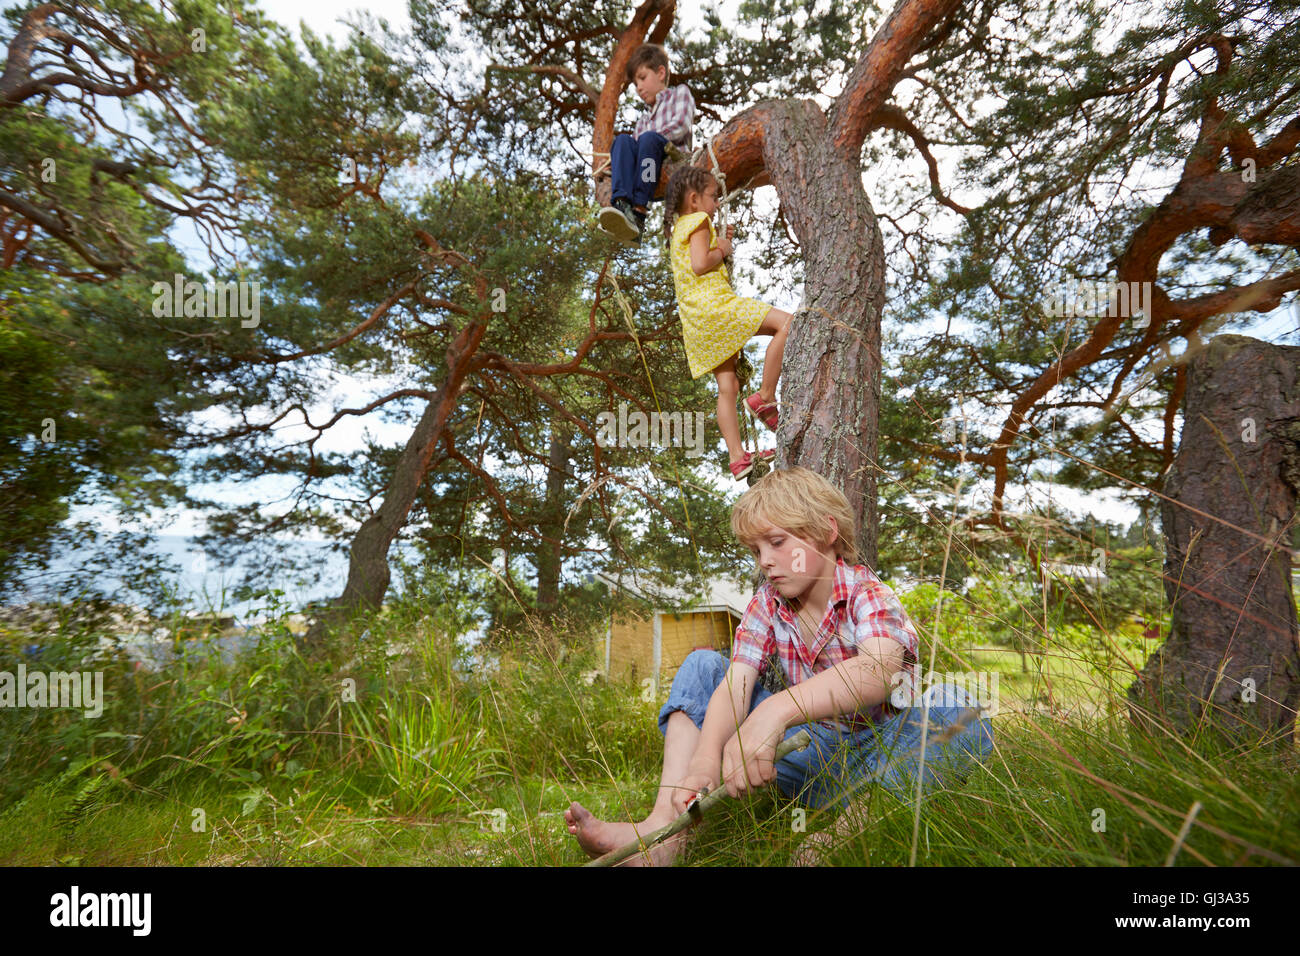 Kleiner Junge sitzt im Baum, junges Mädchen Klettern Strickleiter in Baum und junge sitzt im Rasen Stockfoto